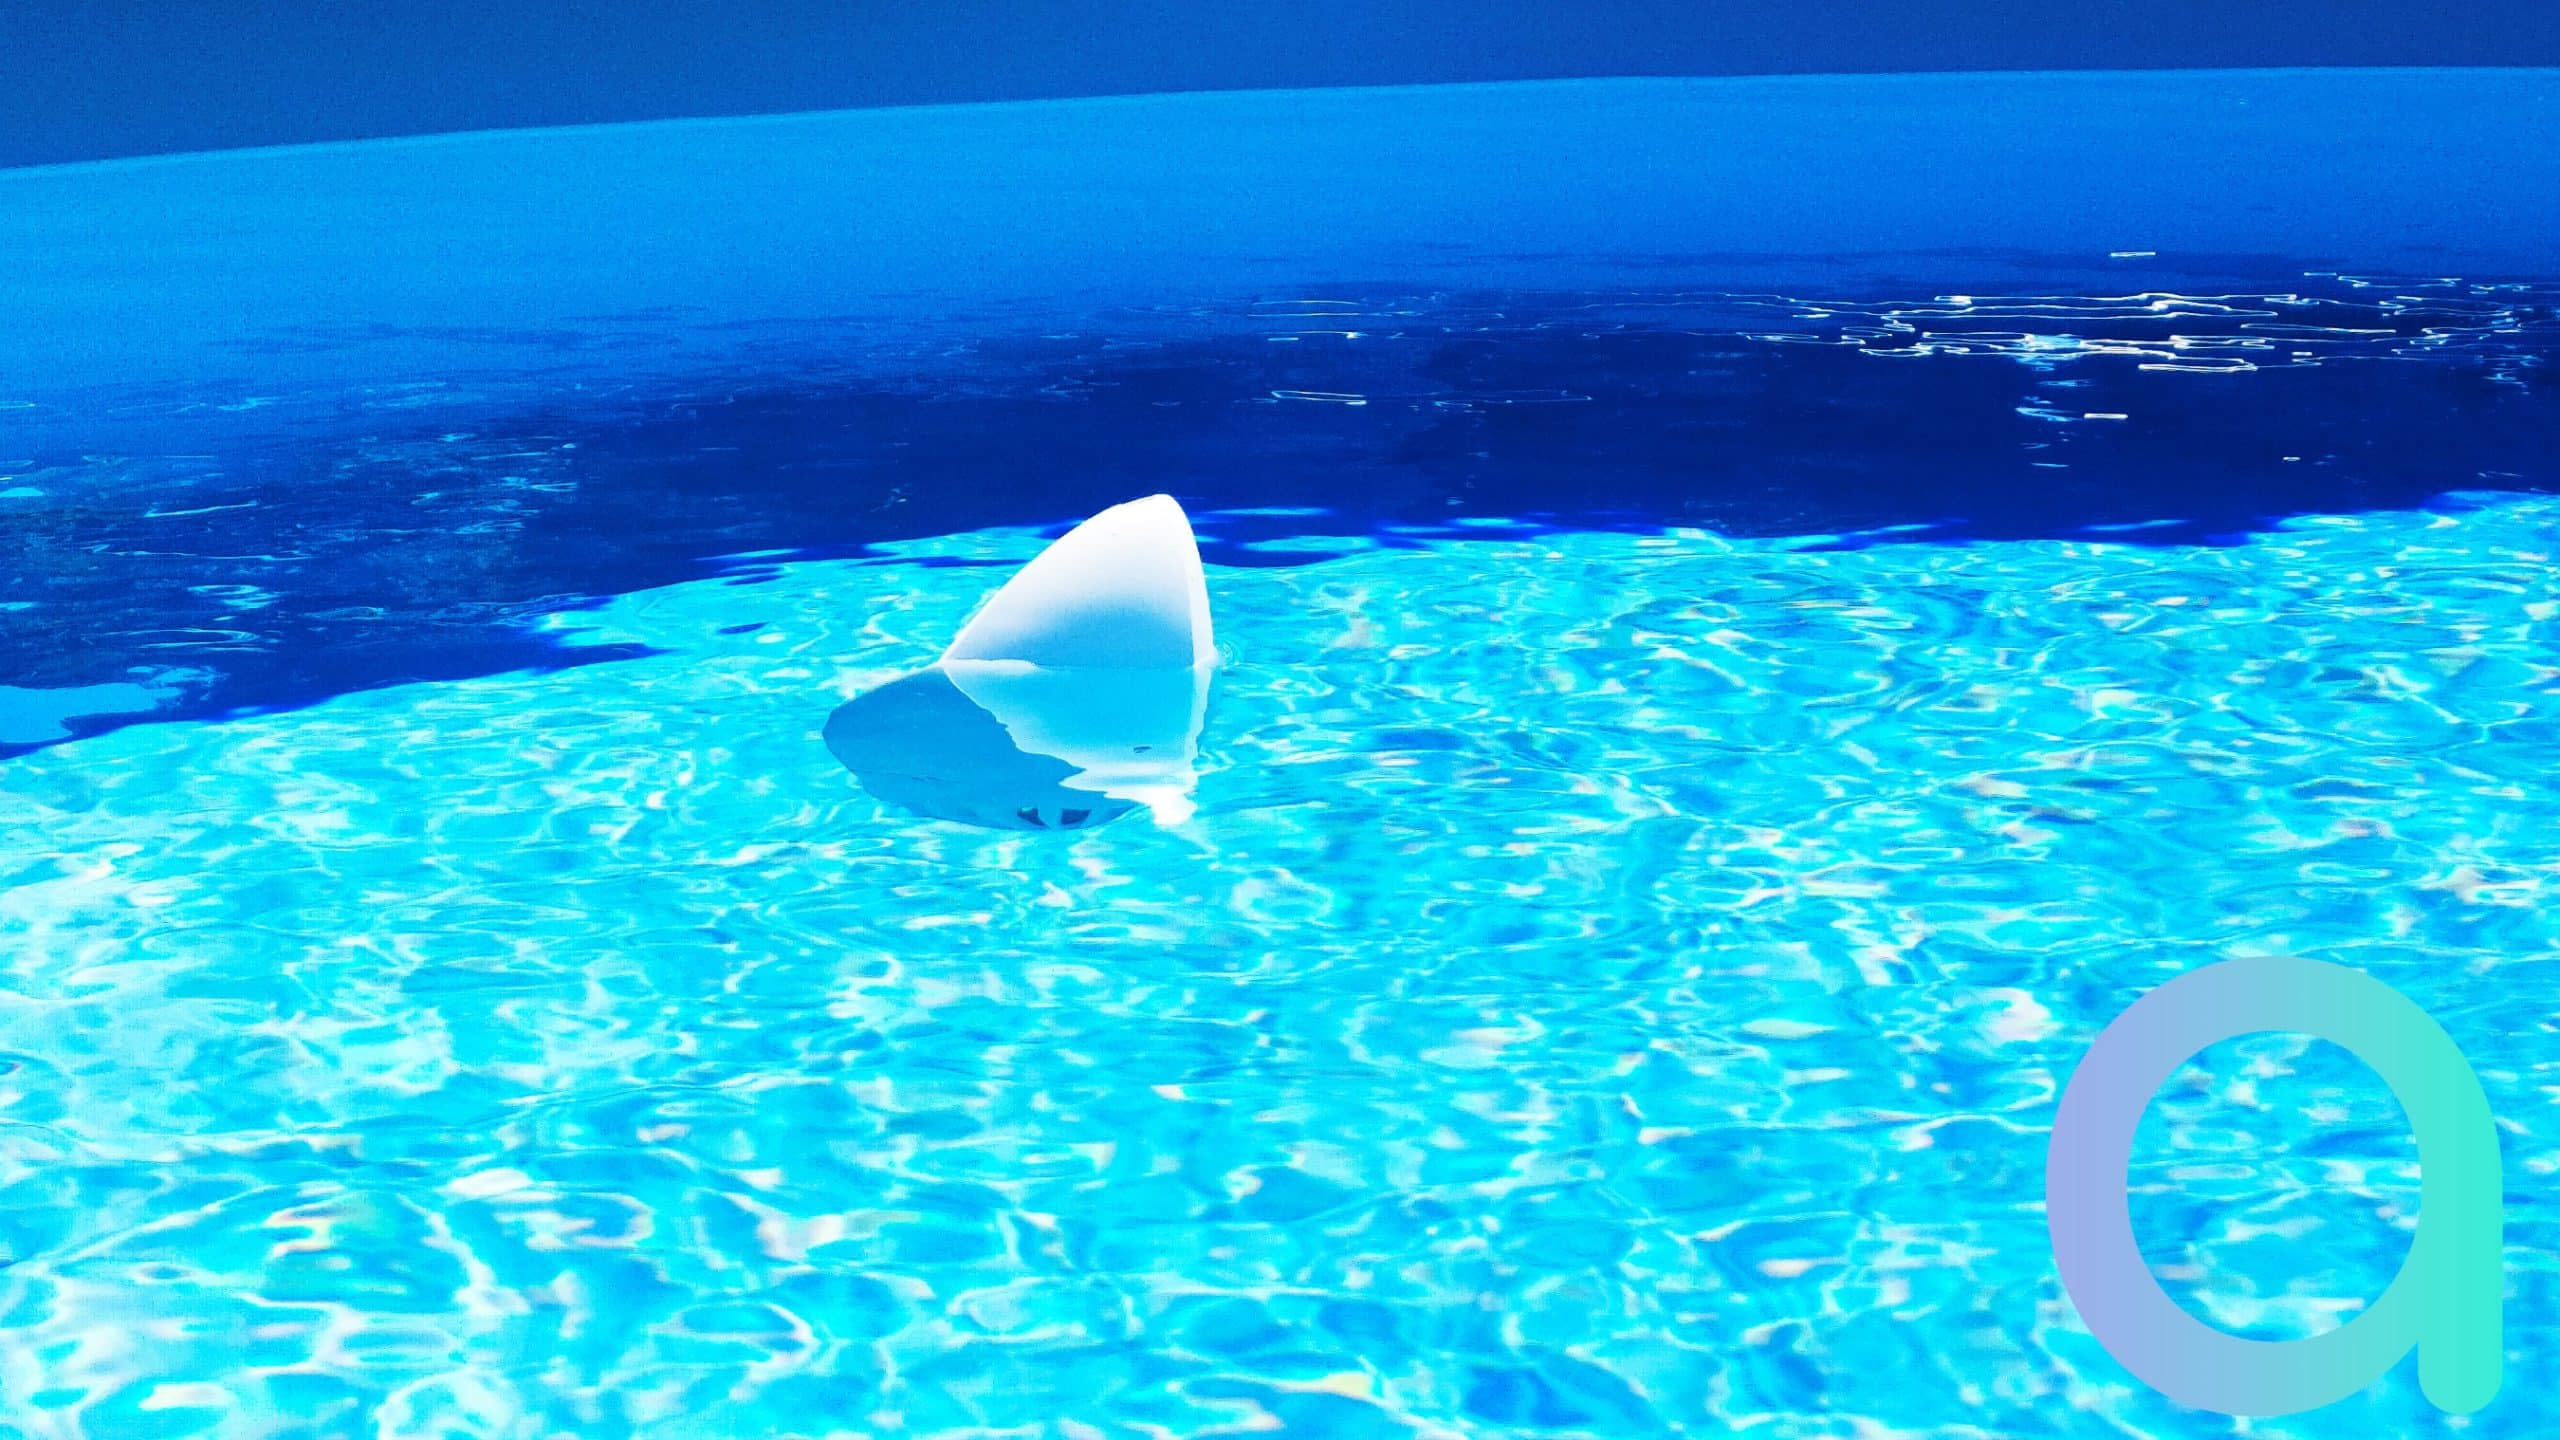 Flipr, l'objet connecté qui analyse l'eau de la piscine à votre place